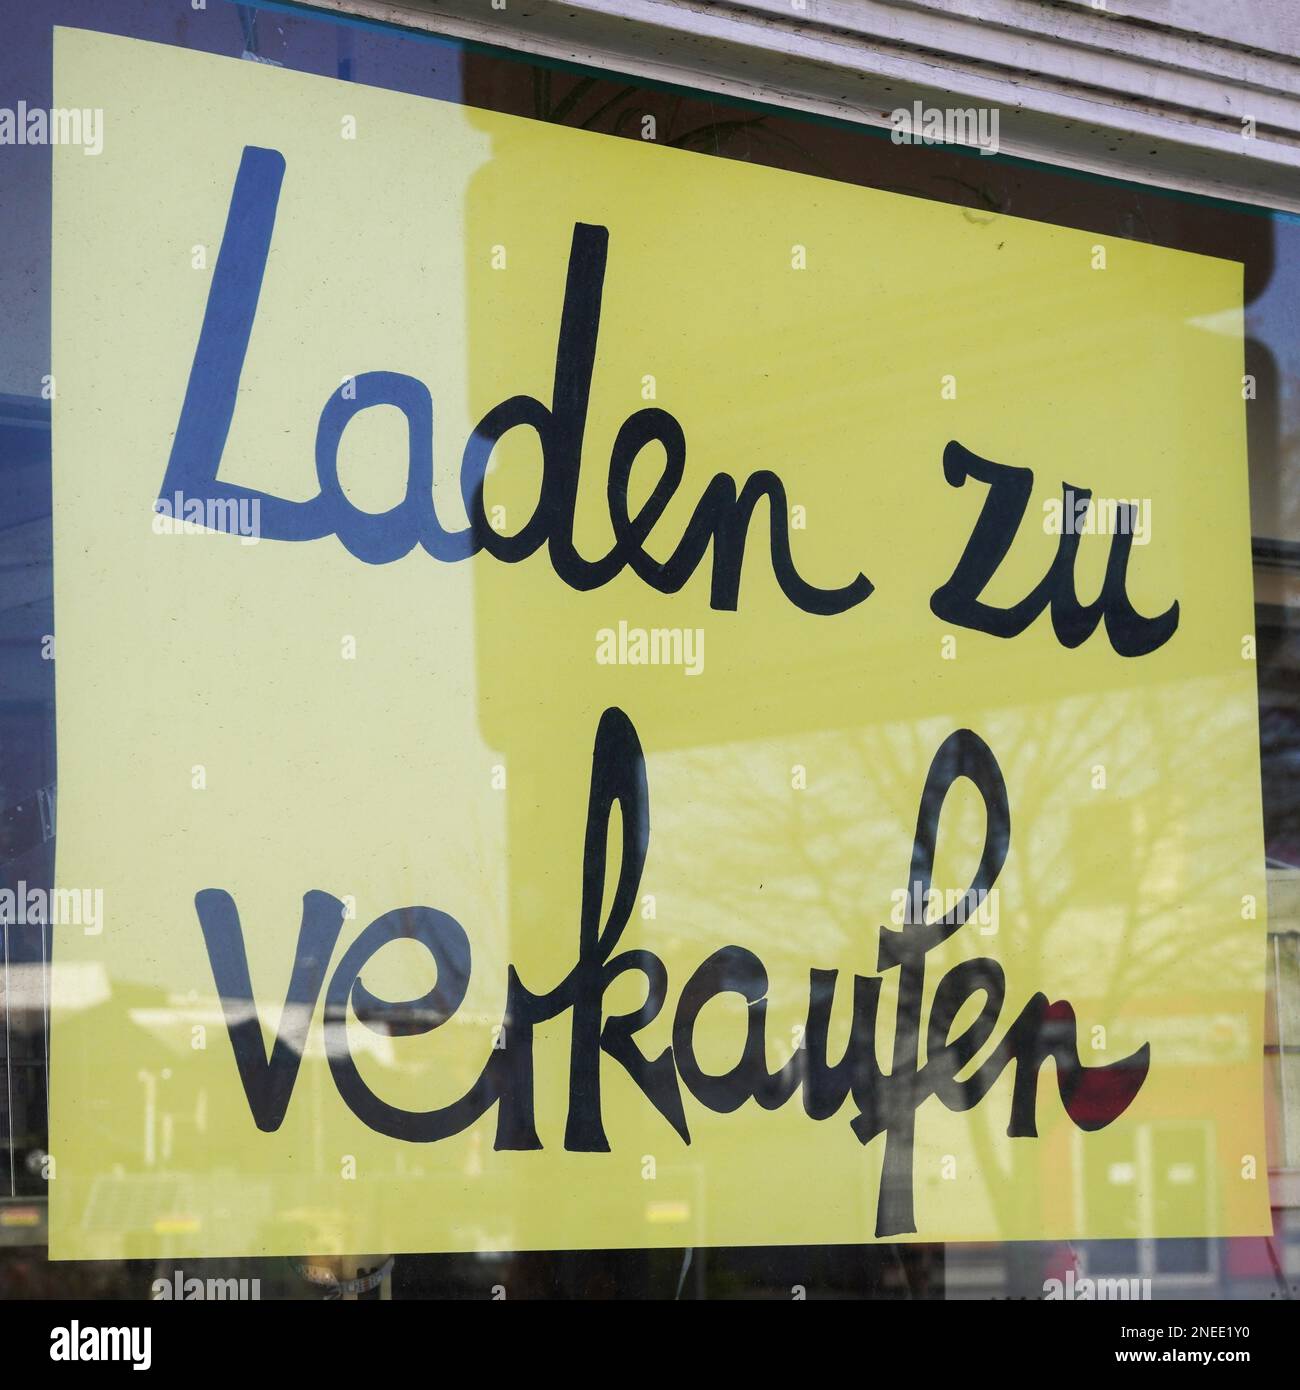 Laden zu verkaufen traduit comme magasin à vendre en allemand - se connecter à la fenêtre de boutique - crise économique ou concept de fermeture d'entreprise Banque D'Images